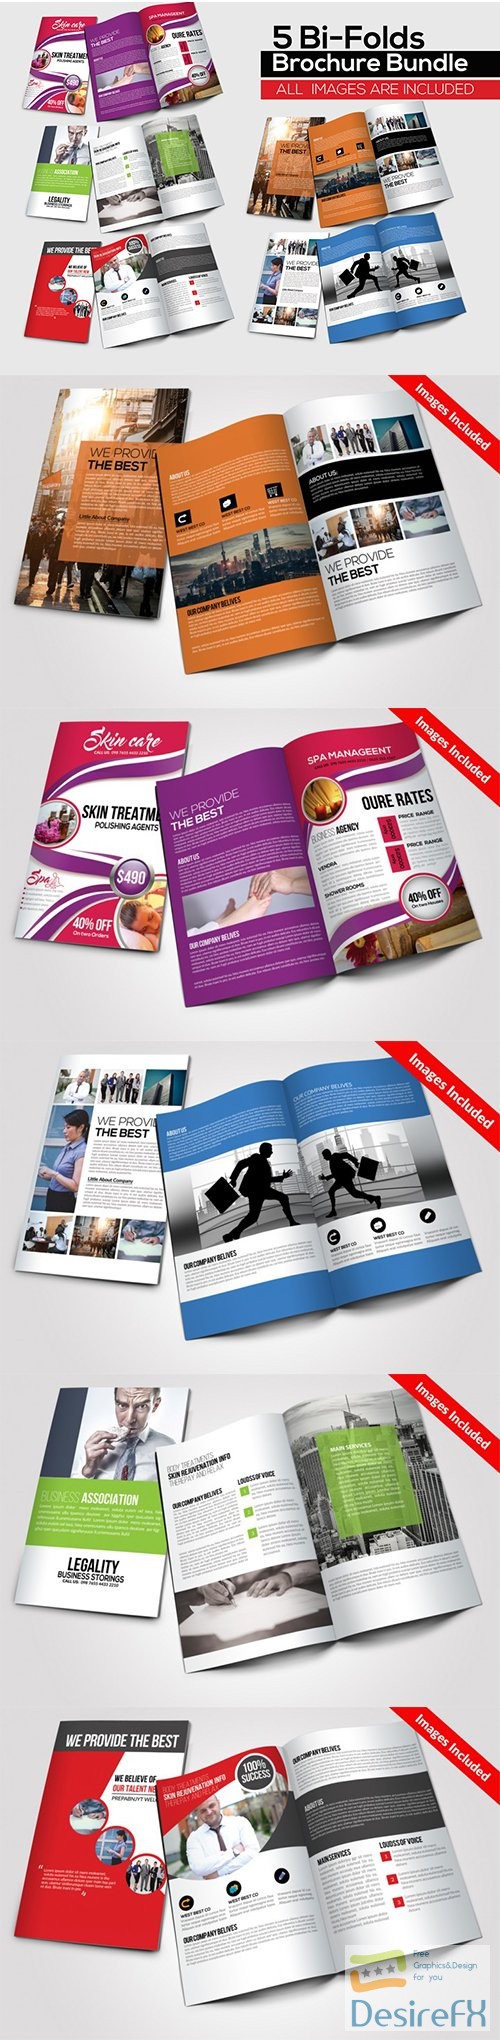 CM - 5 Business Multi Use Bi-fold Brochures Bundle